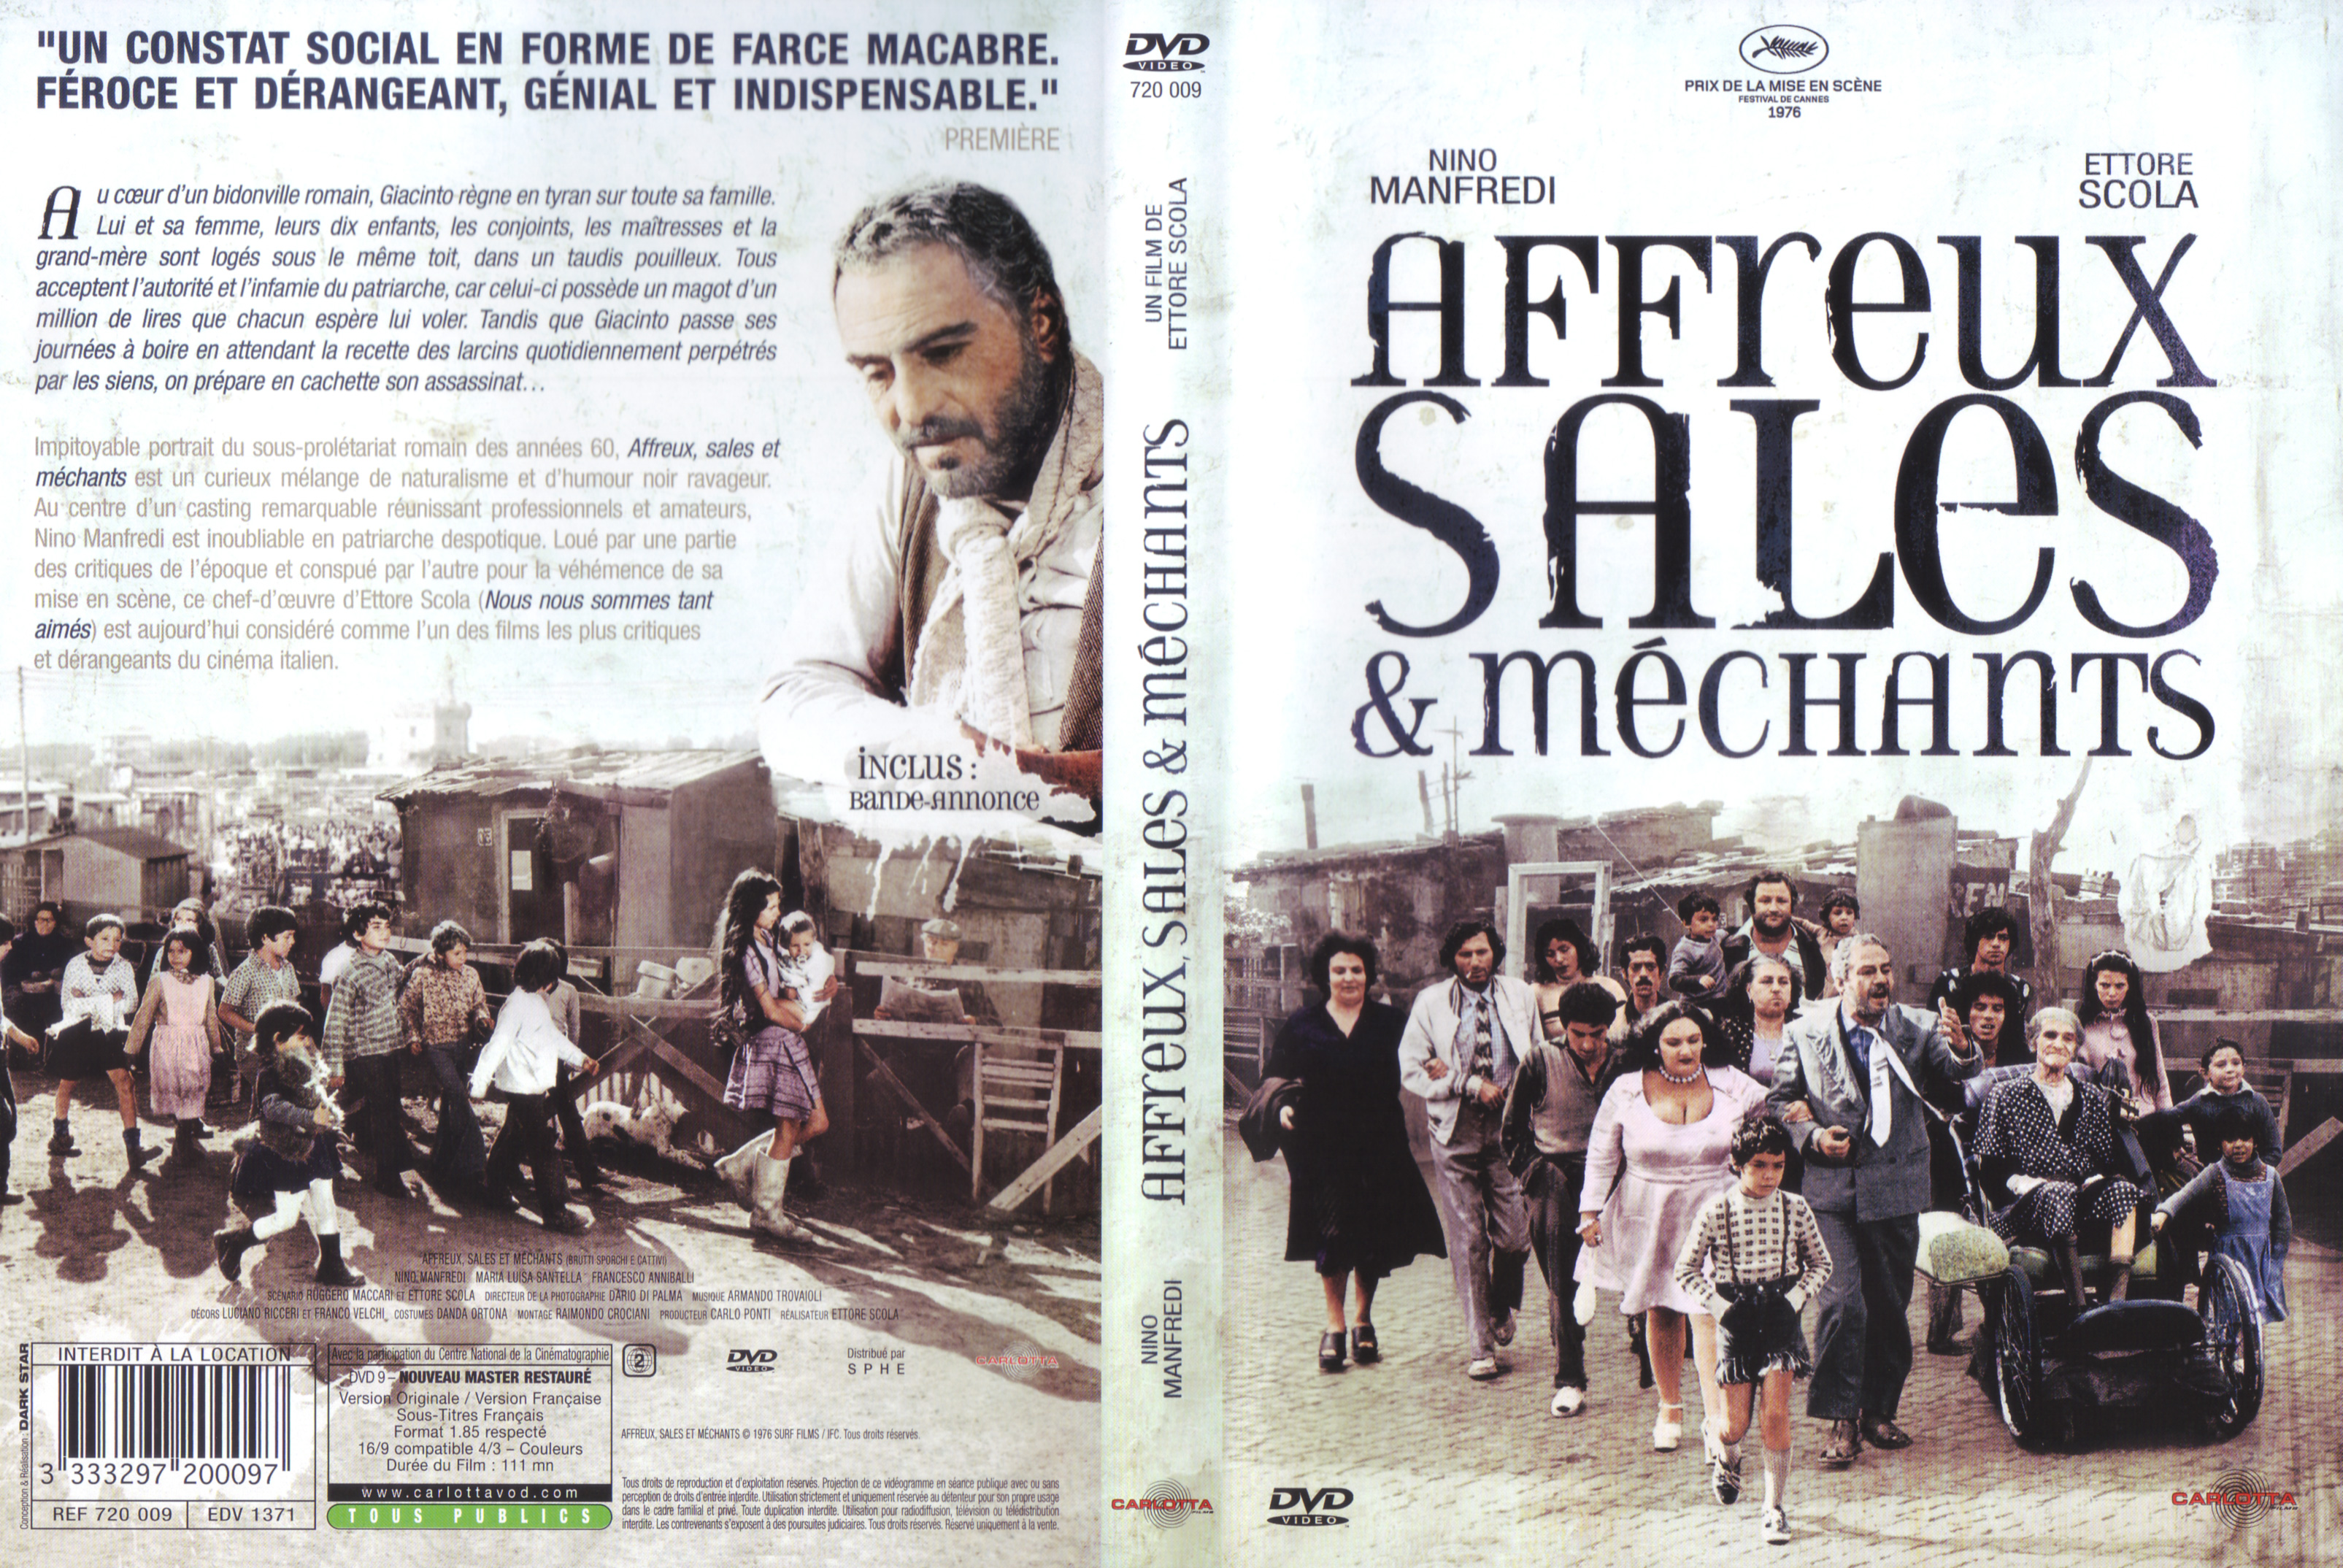 Jaquette DVD Affreux sales et mchants v3